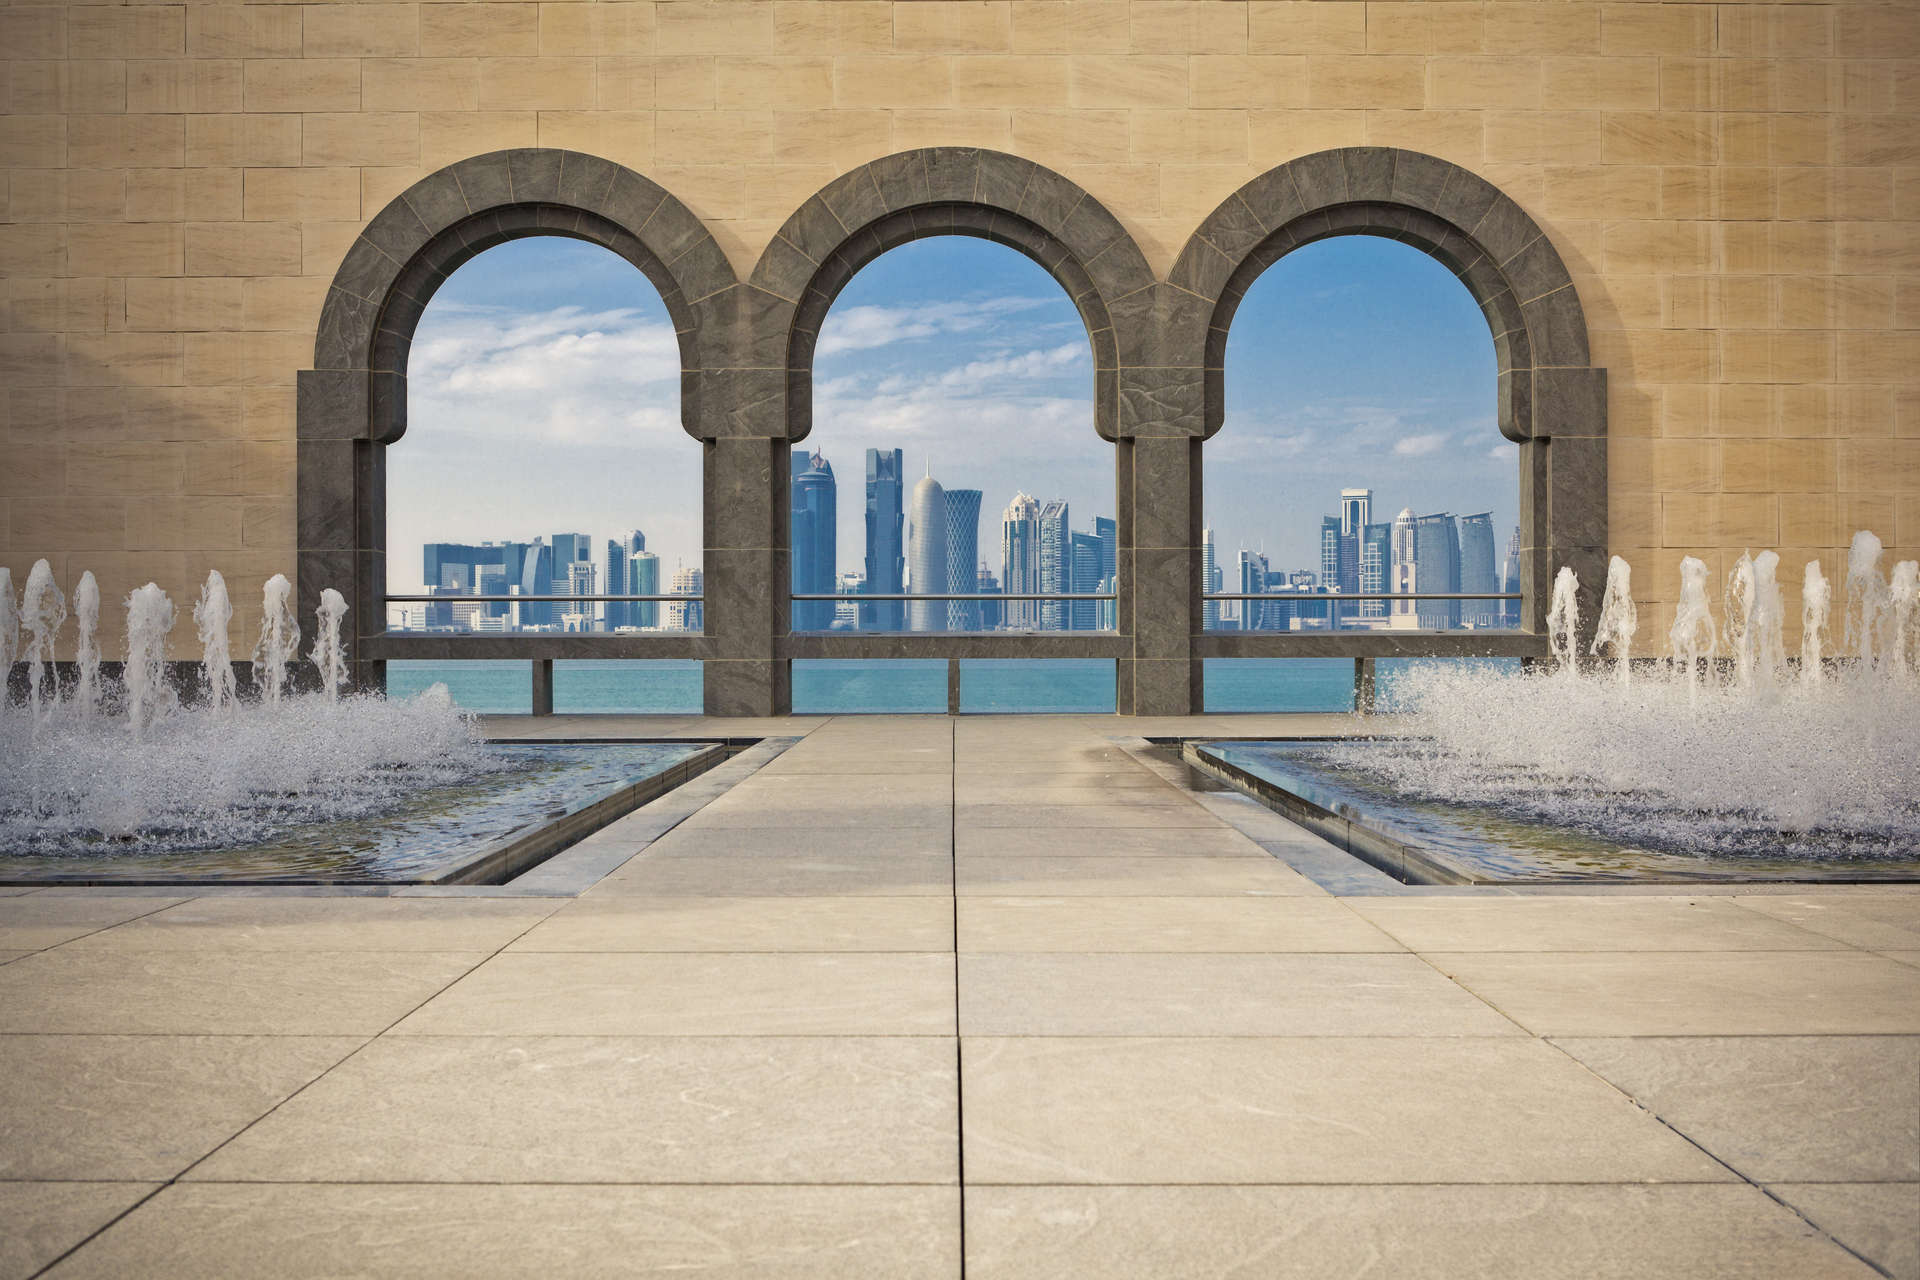 متحف الفن الإسلامي هو واحد من أهم الأماكن التي يمكن زيارتها في قطر